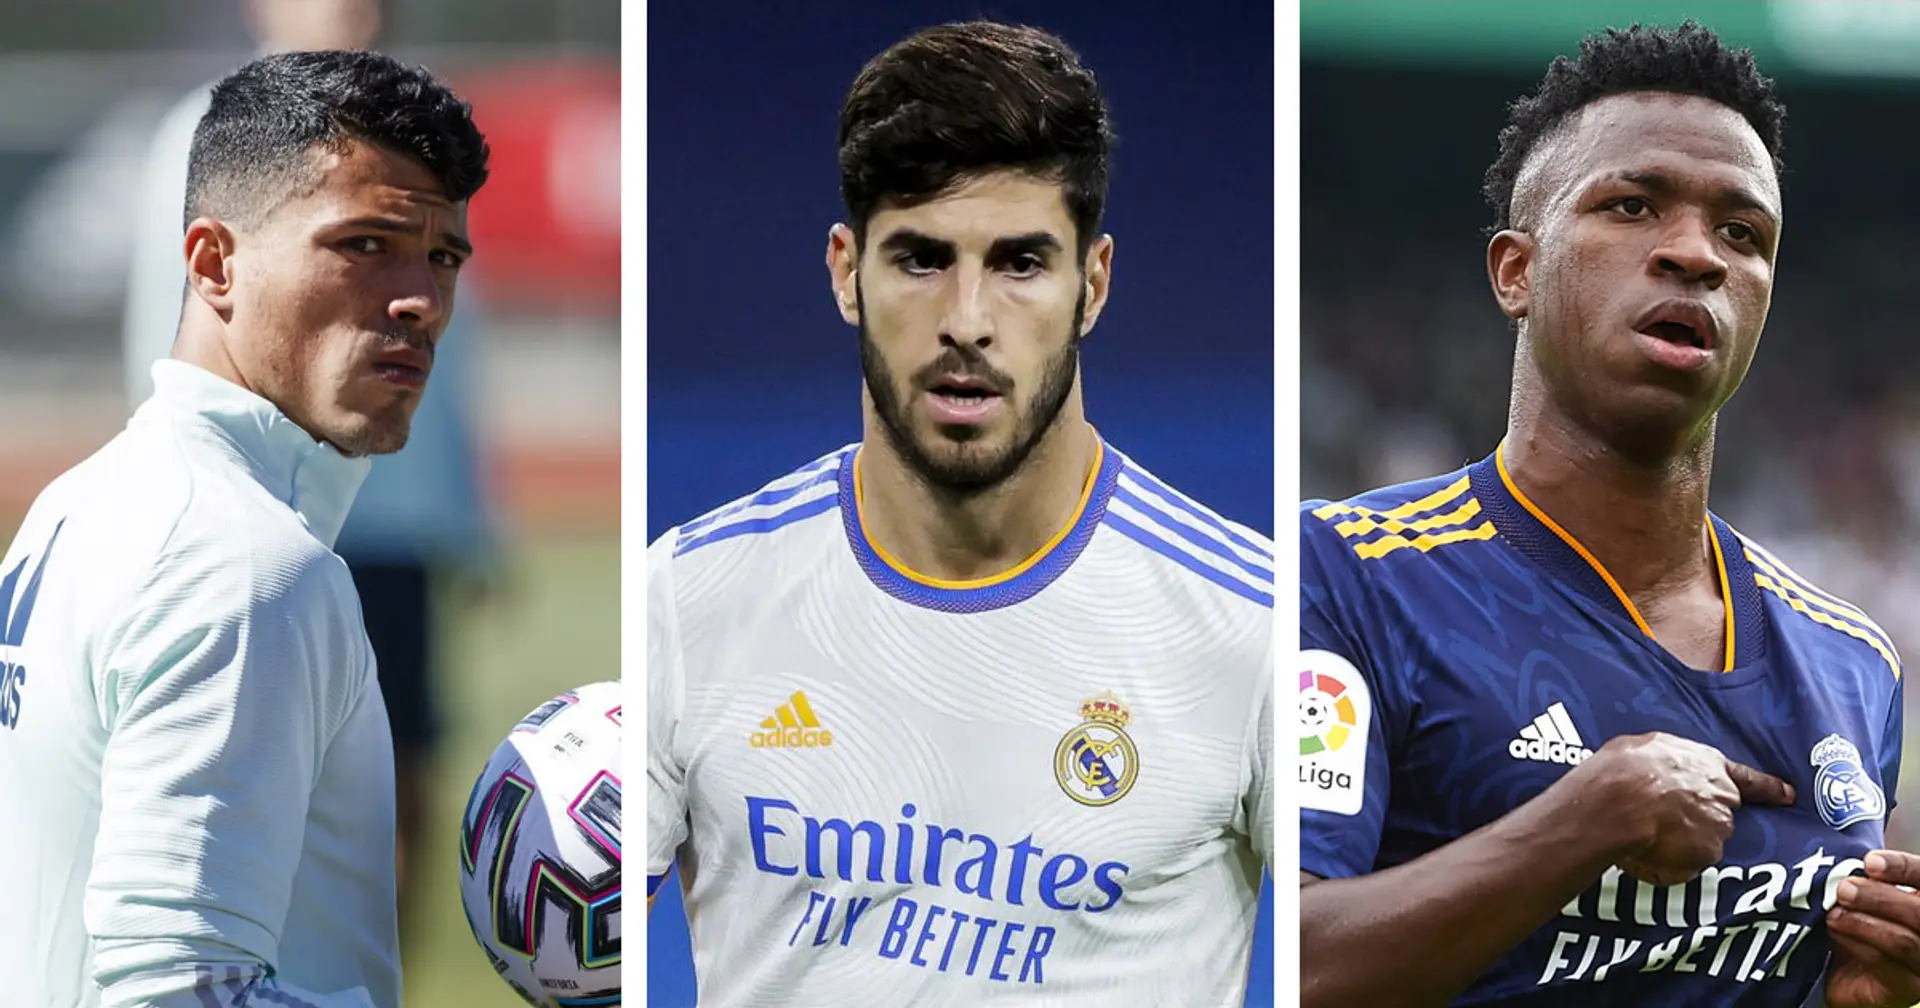 Le Real Madrid veut prolonger le contrat d'Asensio et 3 autres grosses actus que vous avez peut-être manquées